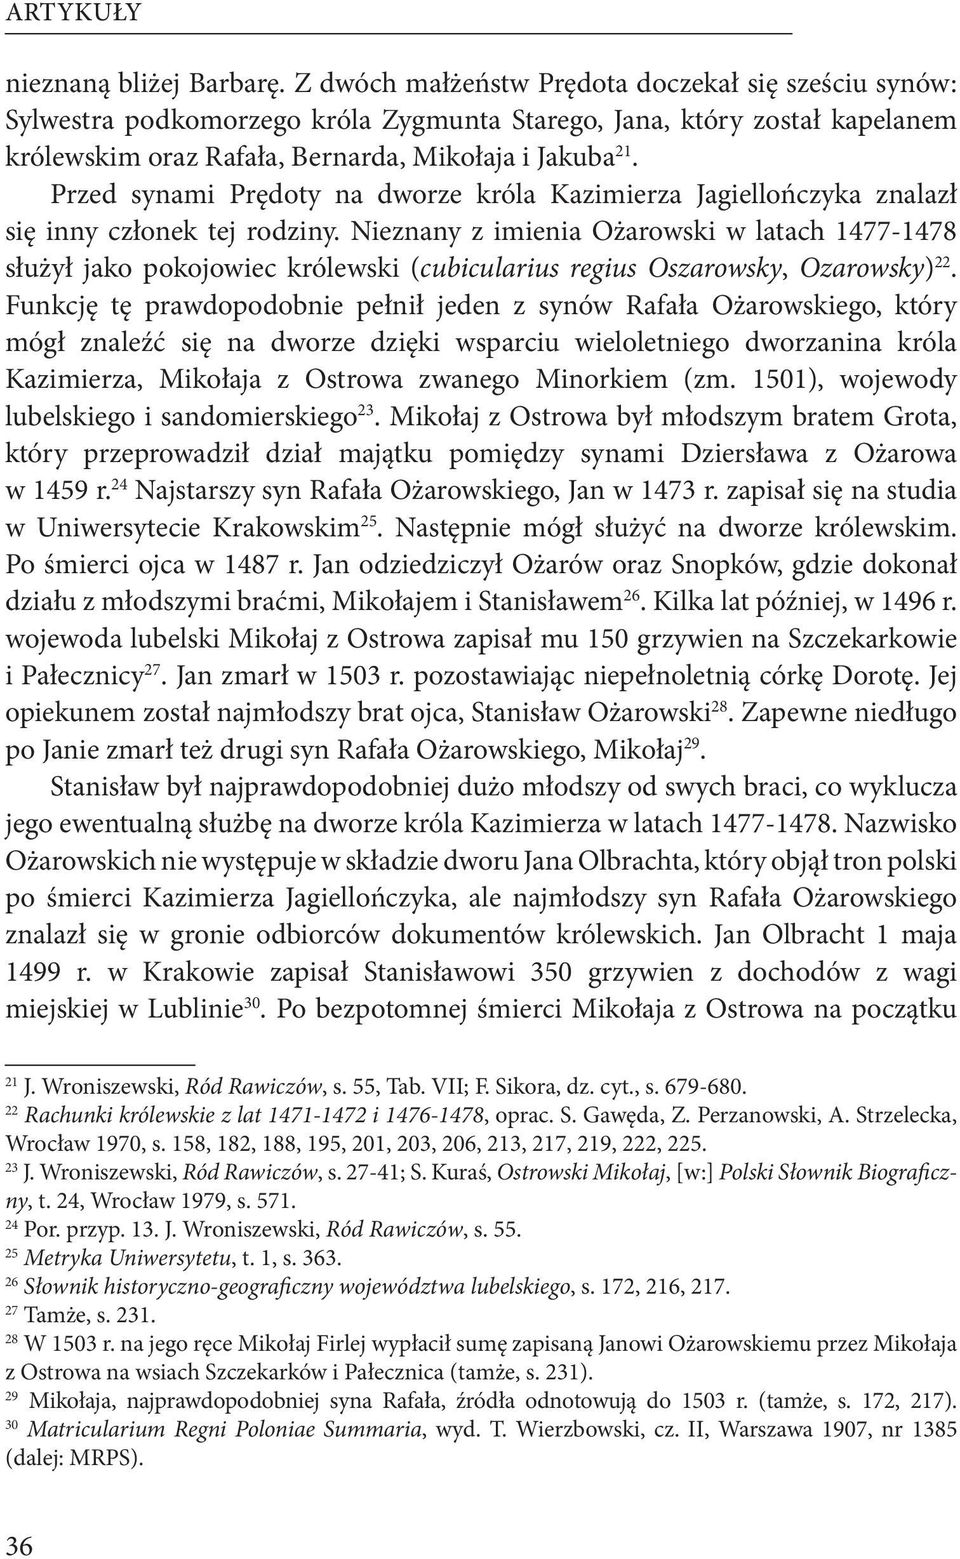 Przed synami Prędoty na dworze króla Kazimierza Jagiellończyka znalazł się inny członek tej rodziny.